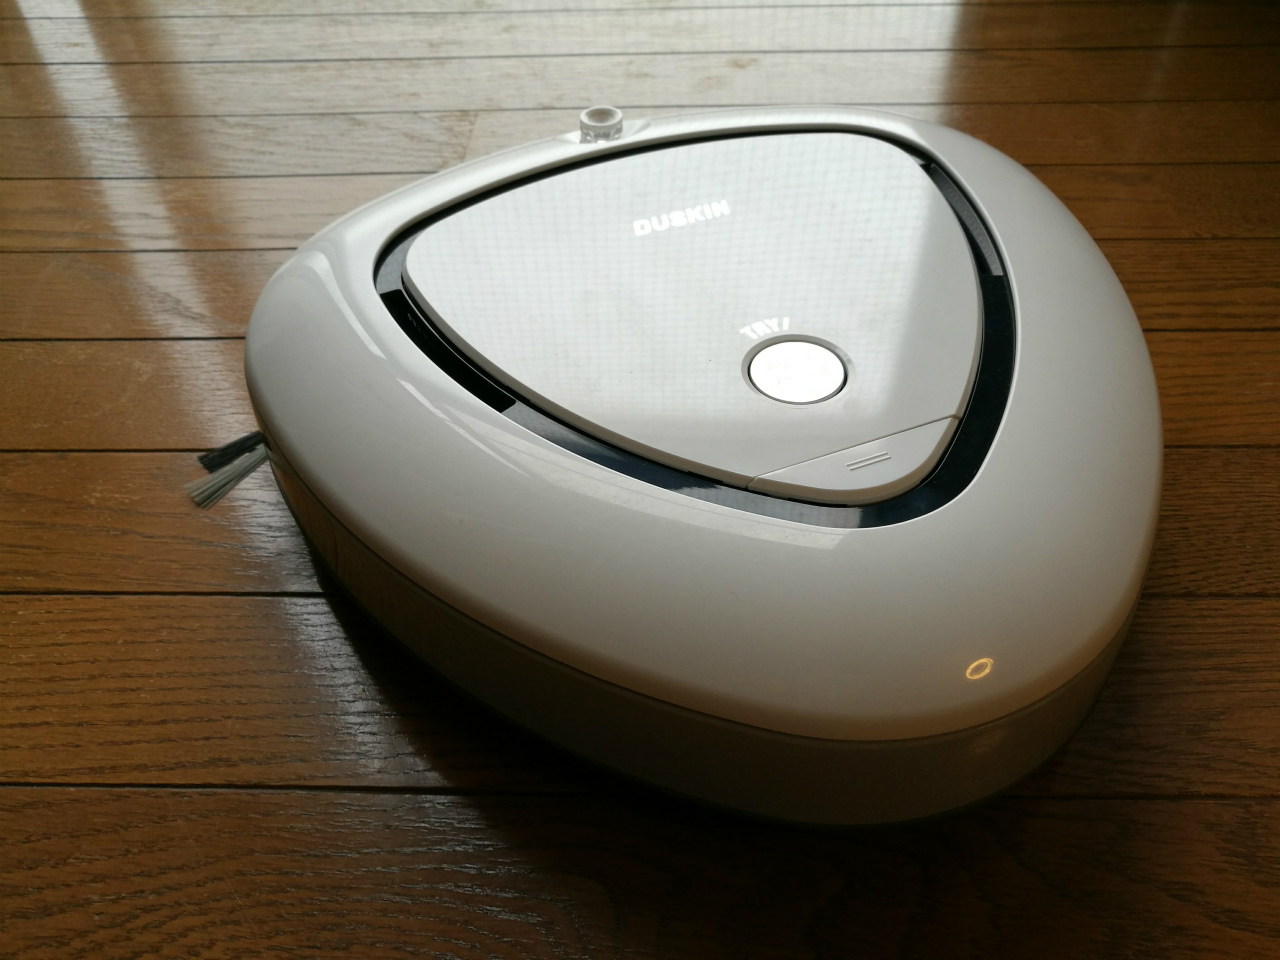 日用品] ダスキンのロボットクリーナー「SiRo」を借りてみた。ロボット掃除機がわが家に来たことでの変化。